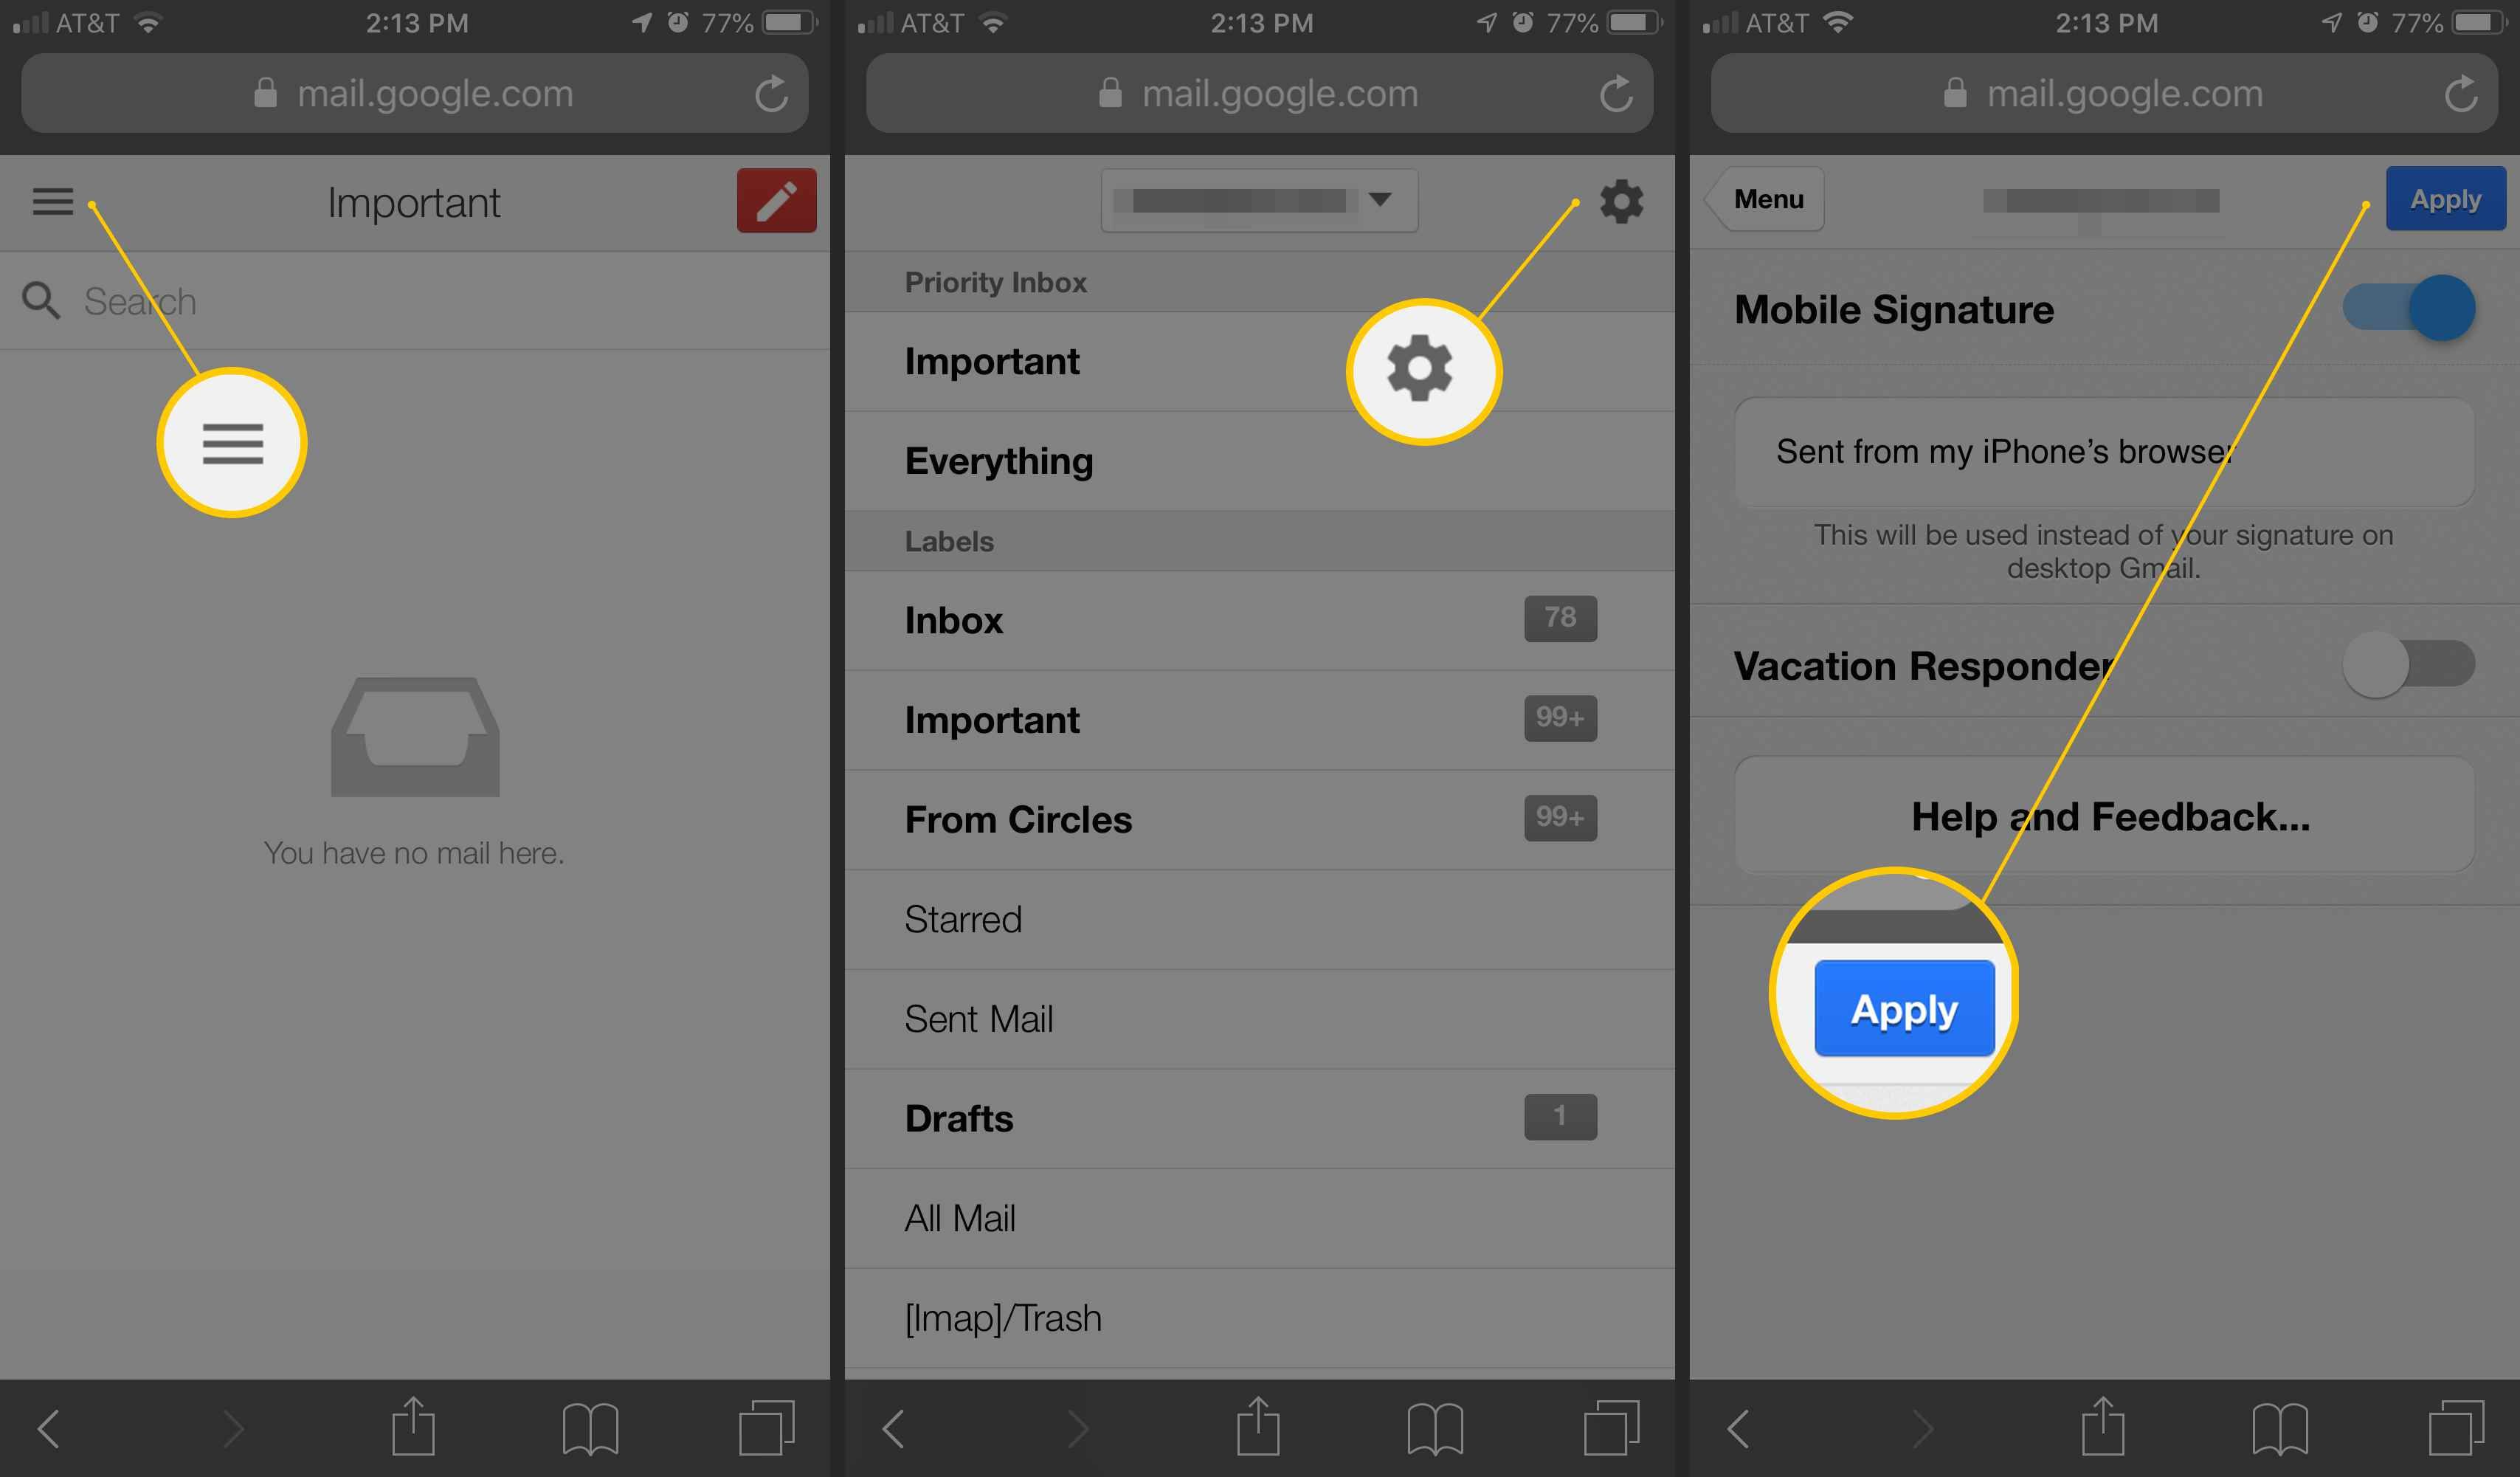 Три экрана iOS для Gmail в Интернете с меню гамбургера, значком шестеренки и кнопкой «Применить для мобильной подписи»